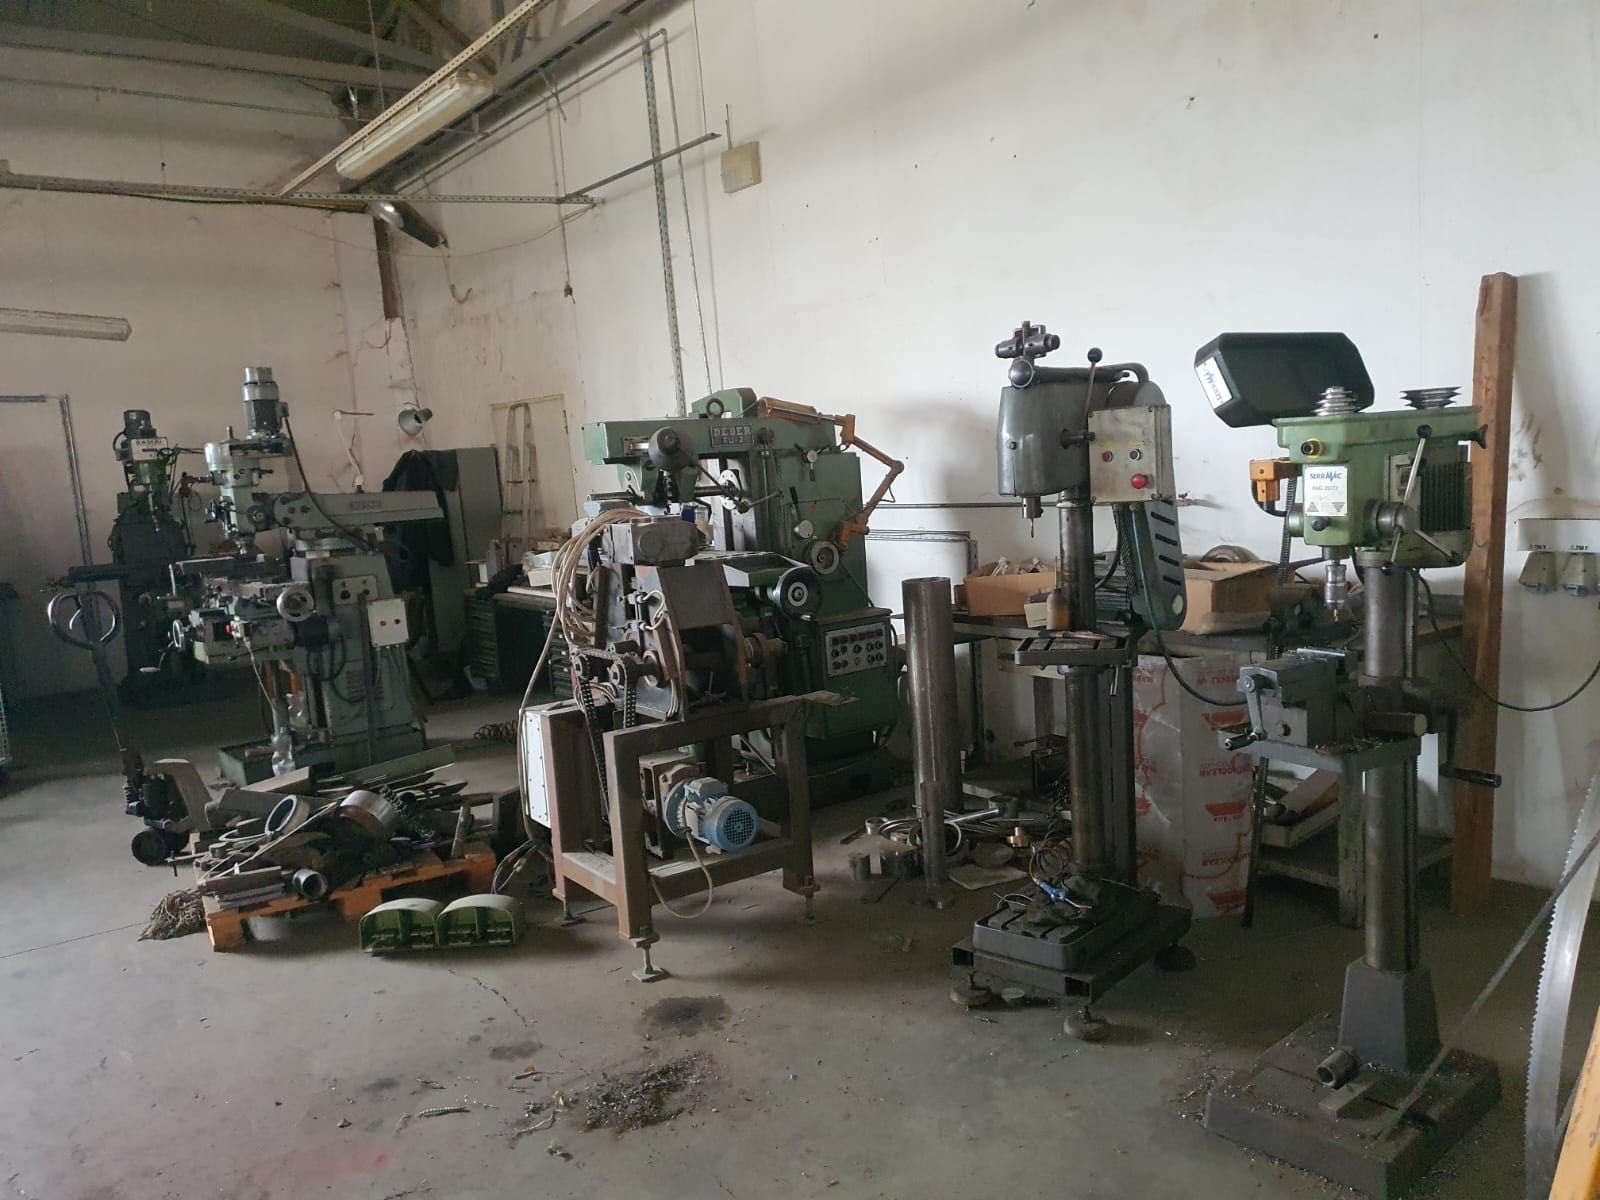 Vând atelier mecanic complet achiziționat în Italia